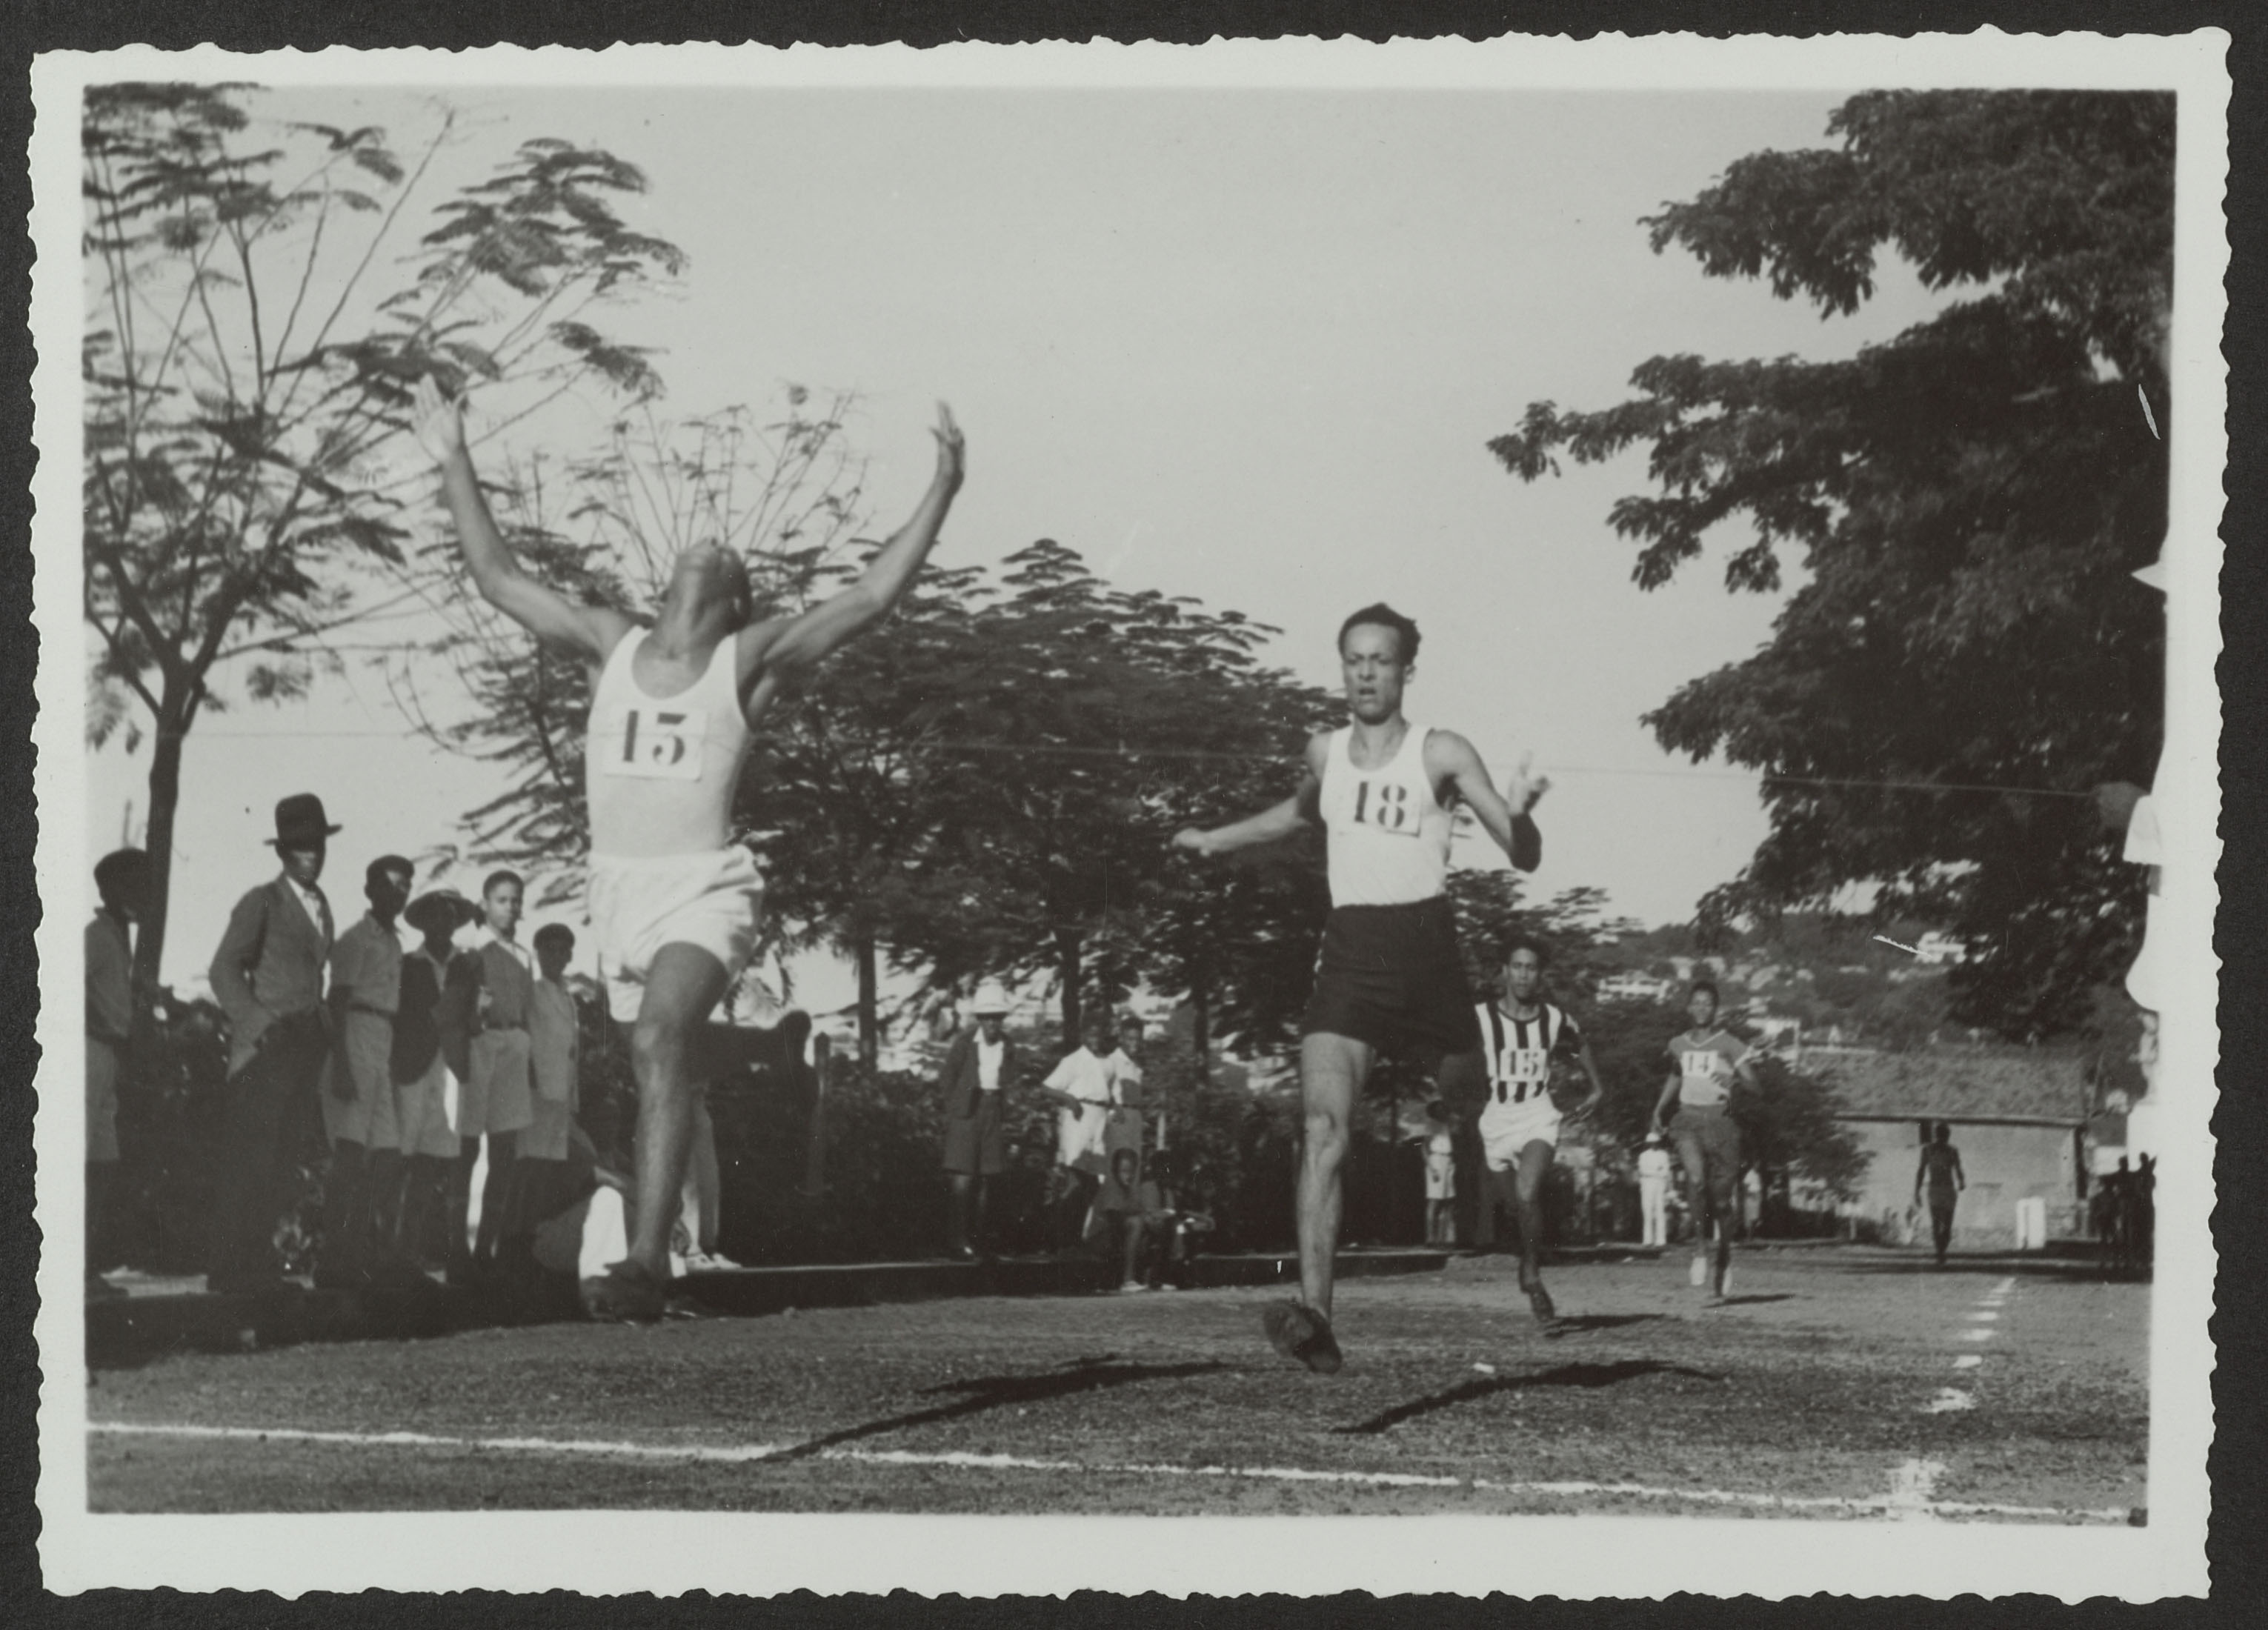 Arrivée d’une course de sprint en Martinique (Fort-de France) vers 1945-1947